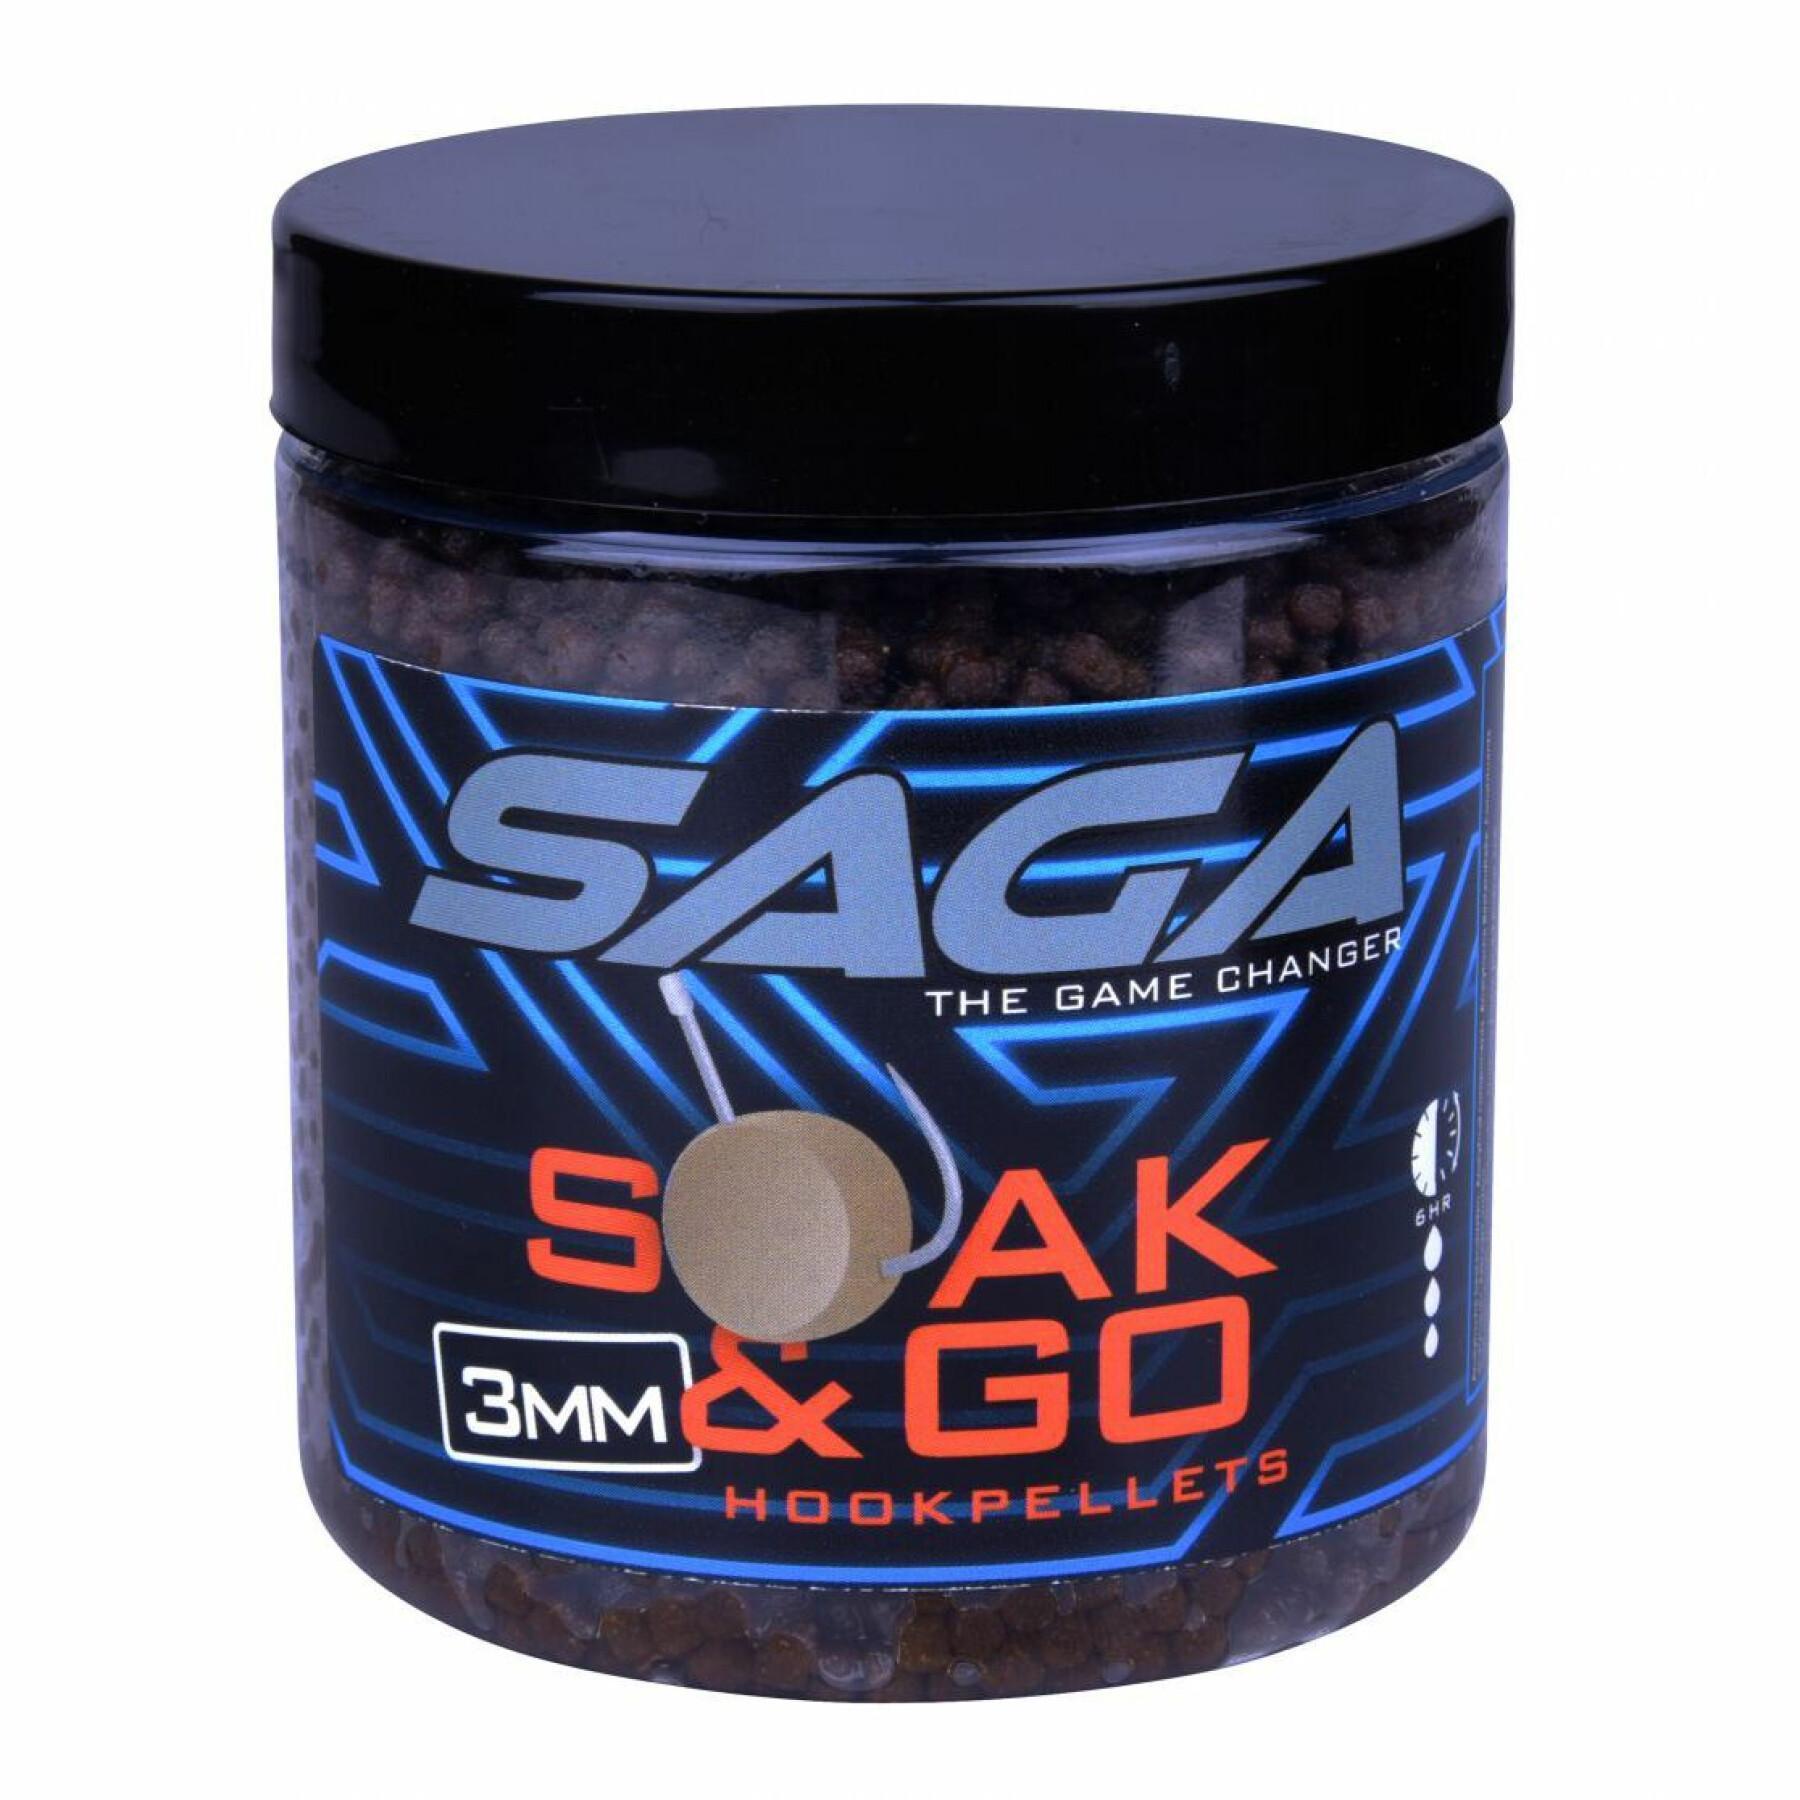 Secado de pellets Saga soak & go 250ml